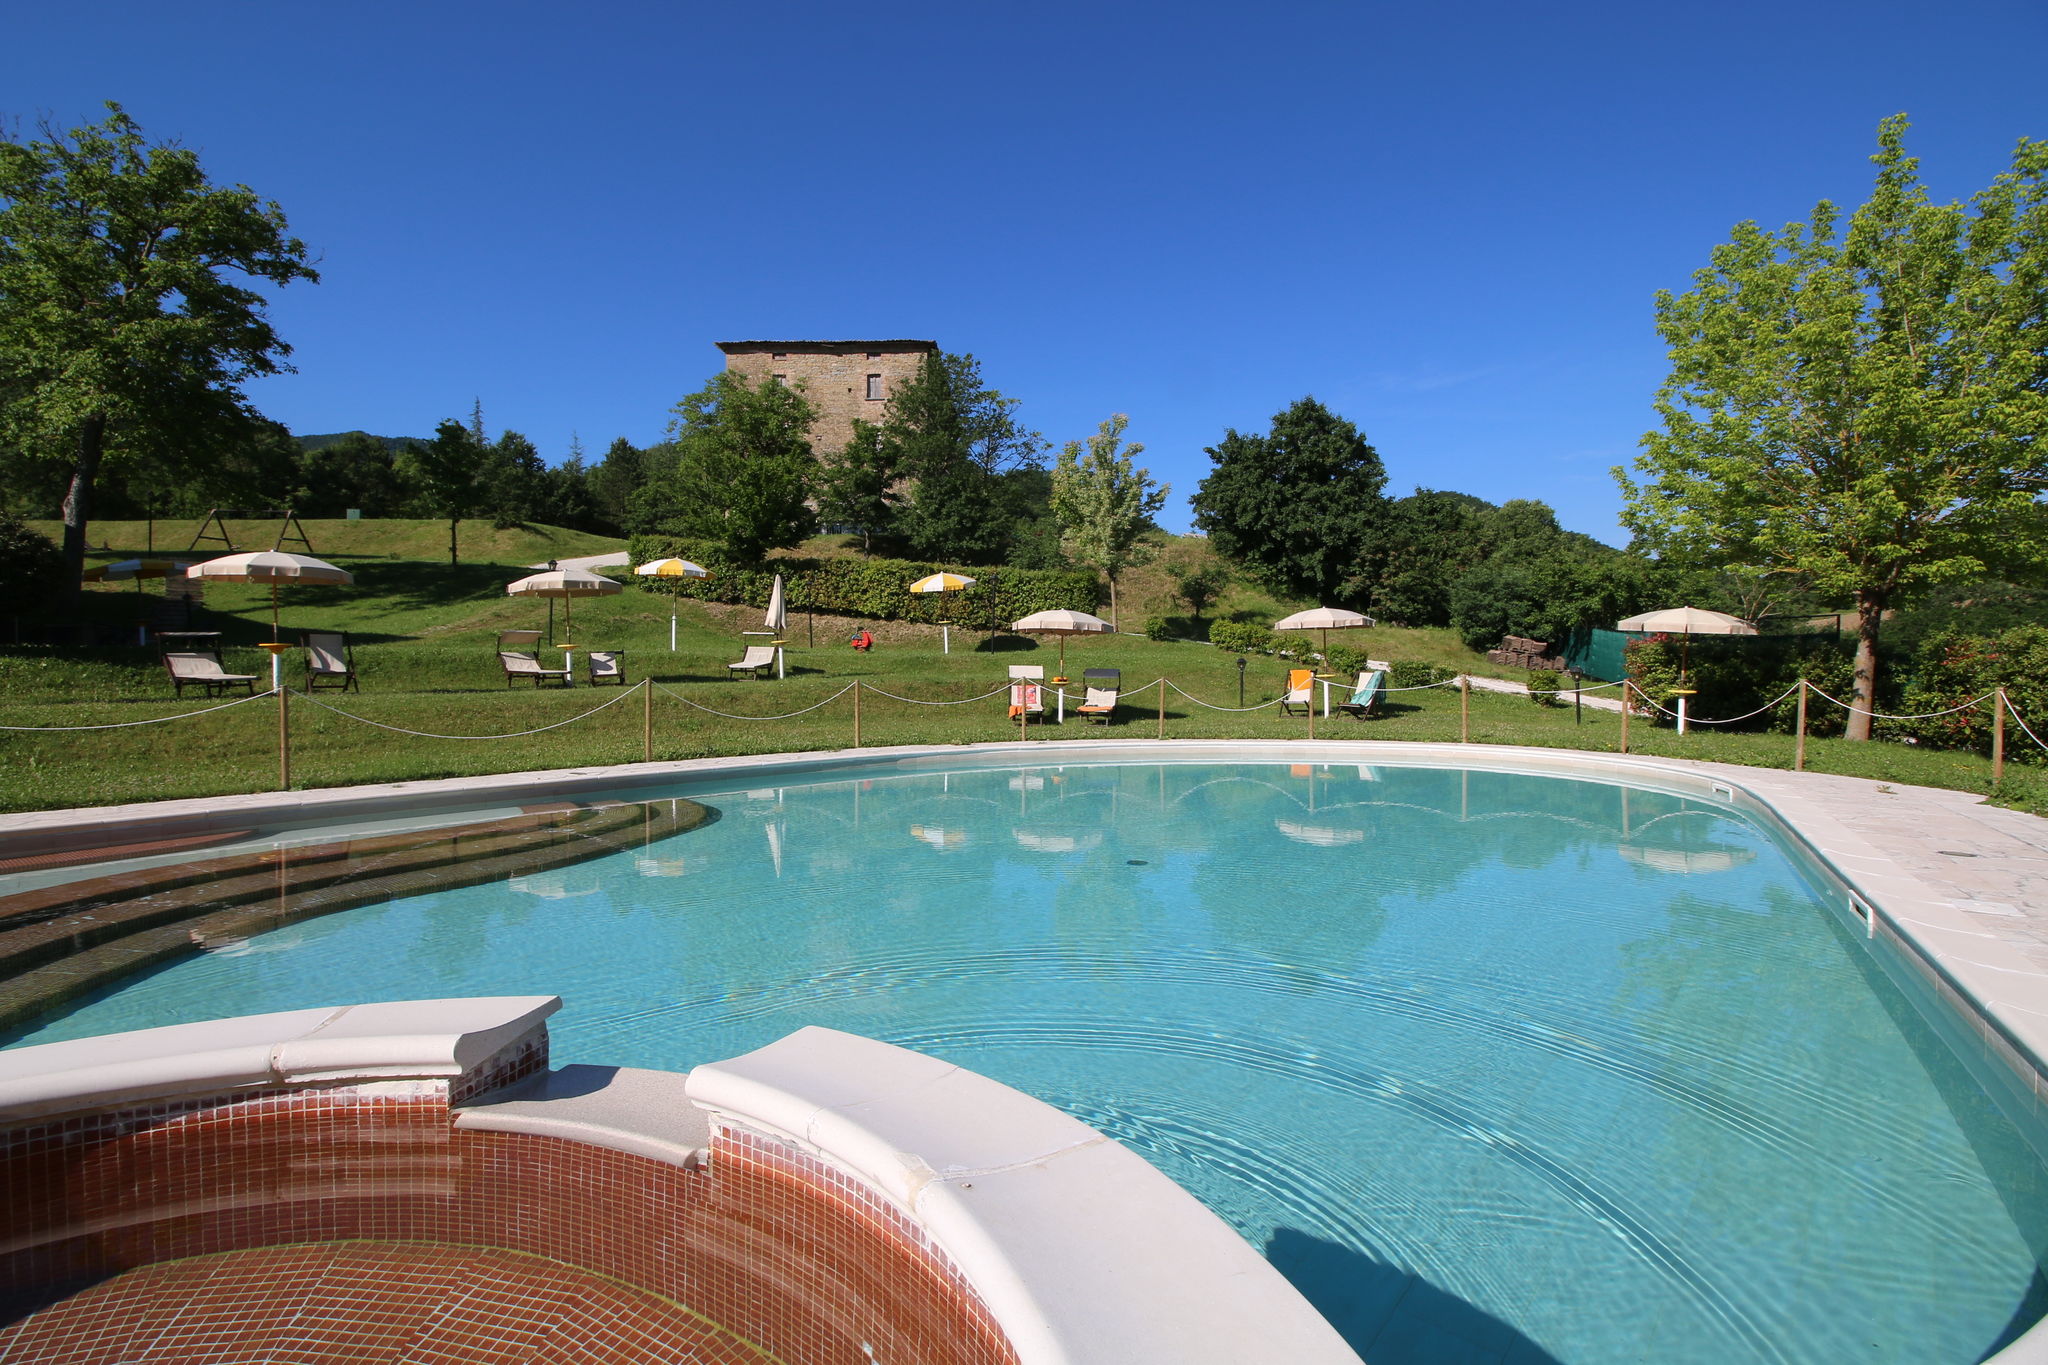 Landgoed met zwembad, ruime tuin, privé terras en mooi uitzicht

